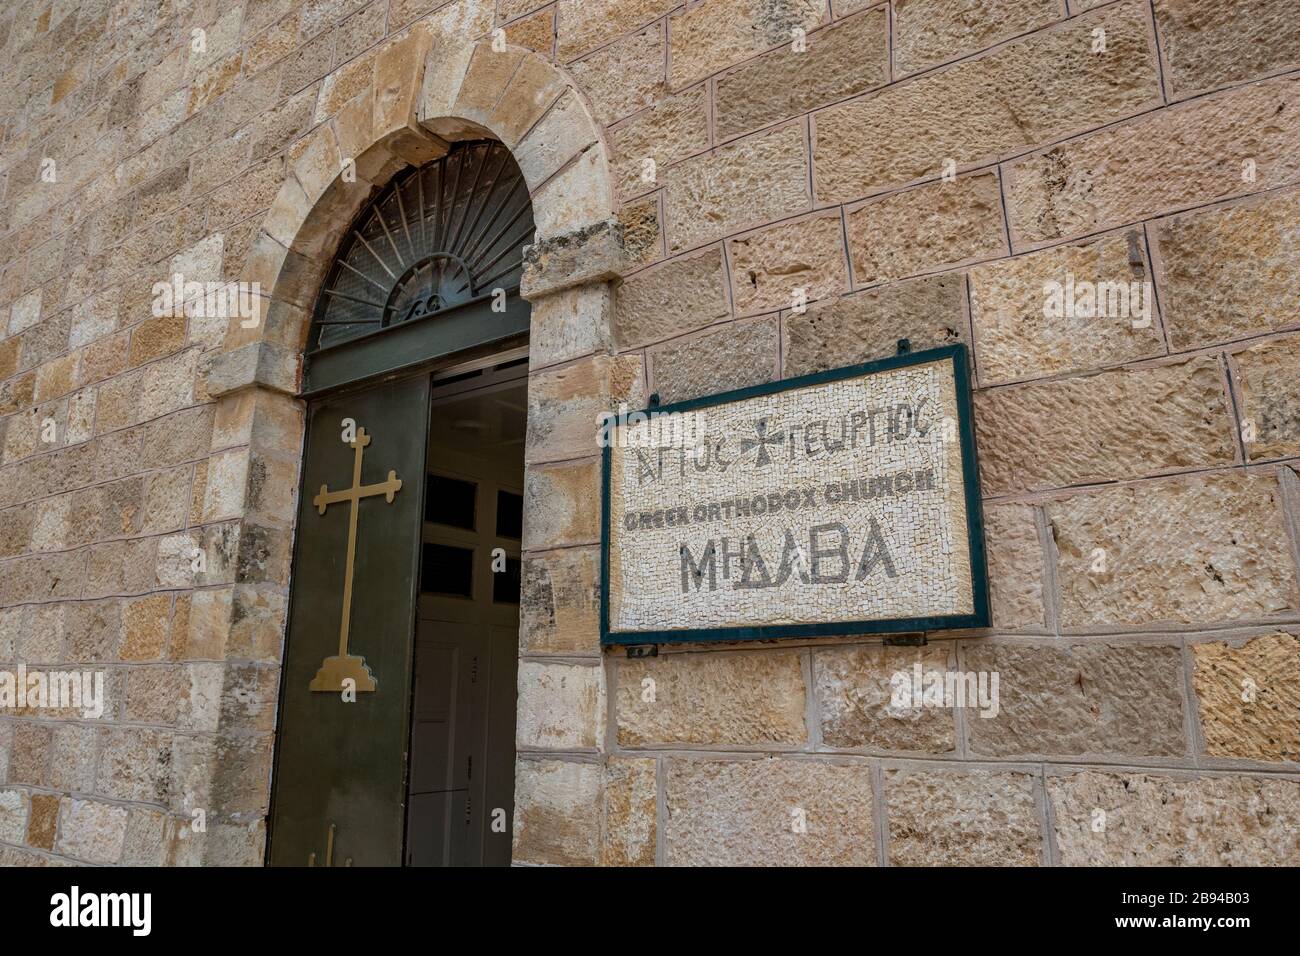 La magnifique plaque en mosaïque à l'entrée de l'église orthodoxe grecque de Saint George à Madaba, Jordanie. Vue sur la rue de la journée d'hiver avec la vieille porte ouverte du bâtiment religieux Banque D'Images